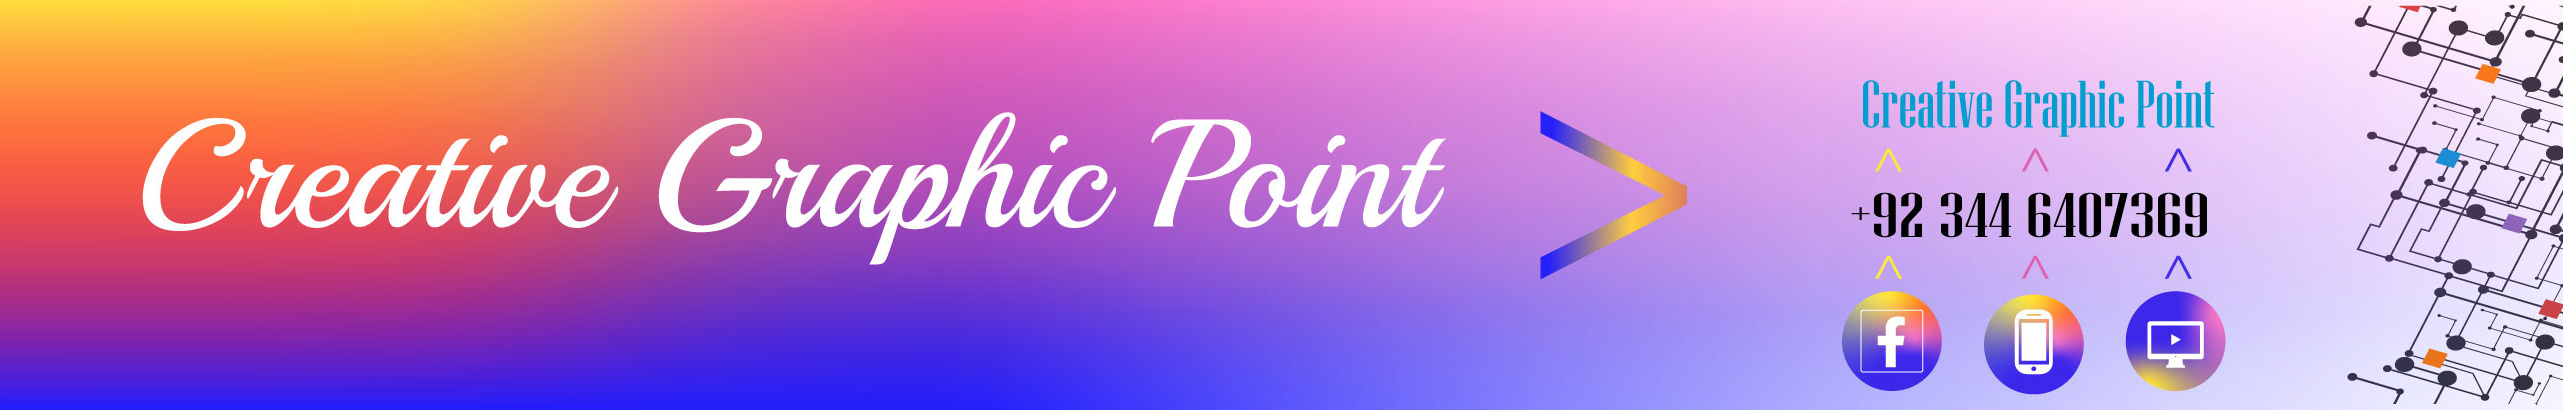 Banner de perfil de Creative Graphic point